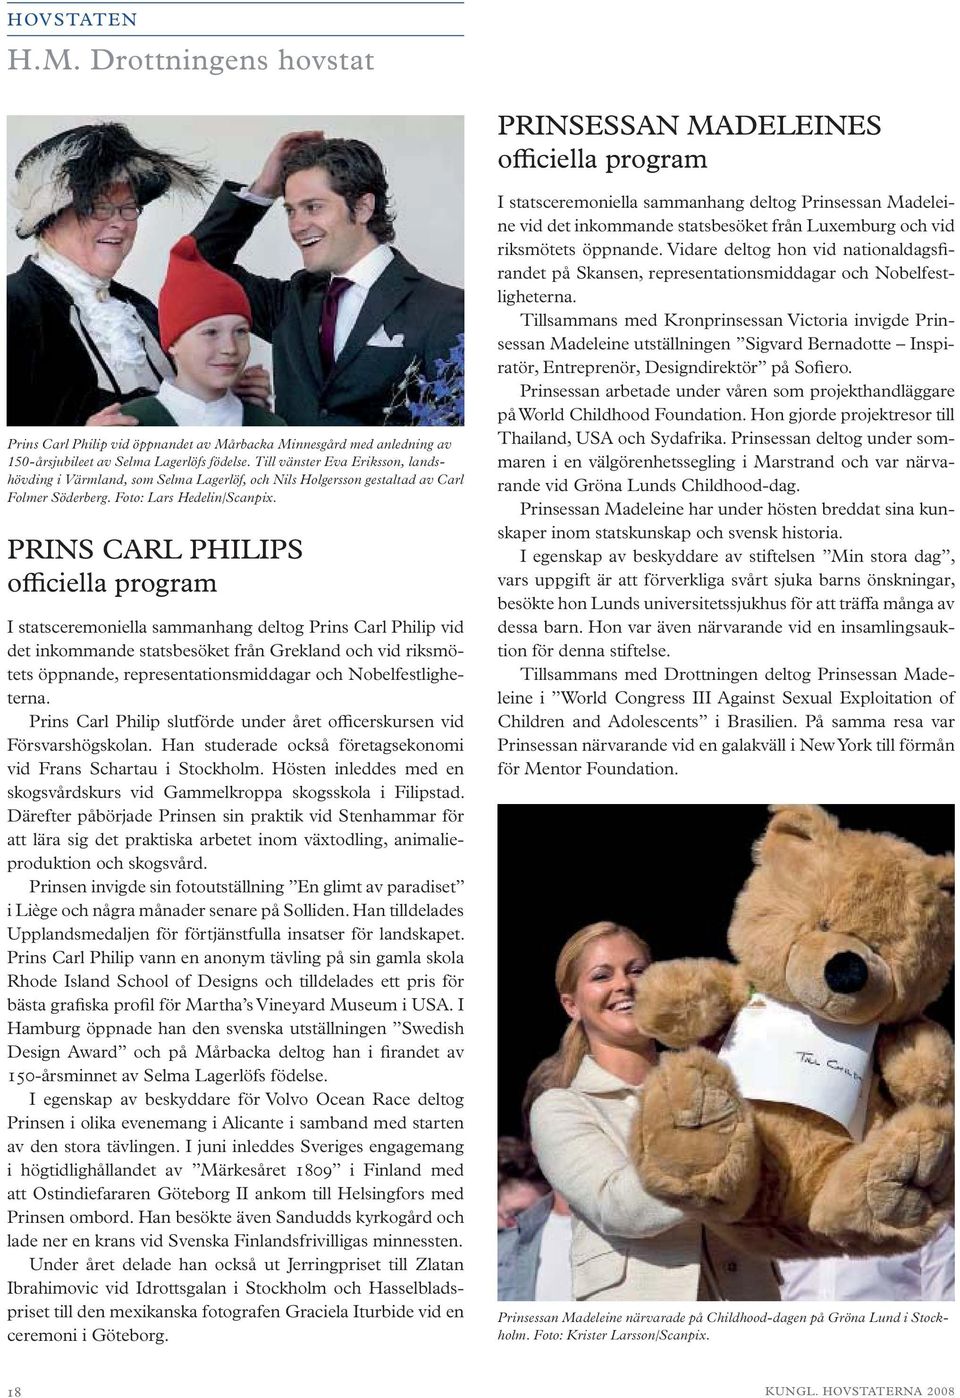 PRINS CARL PHILIPS officiella program I statsceremoniella sammanhang deltog Prins Carl Philip vid det inkommande statsbesöket från Grekland och vid riksmötets öppnande, representationsmiddagar och